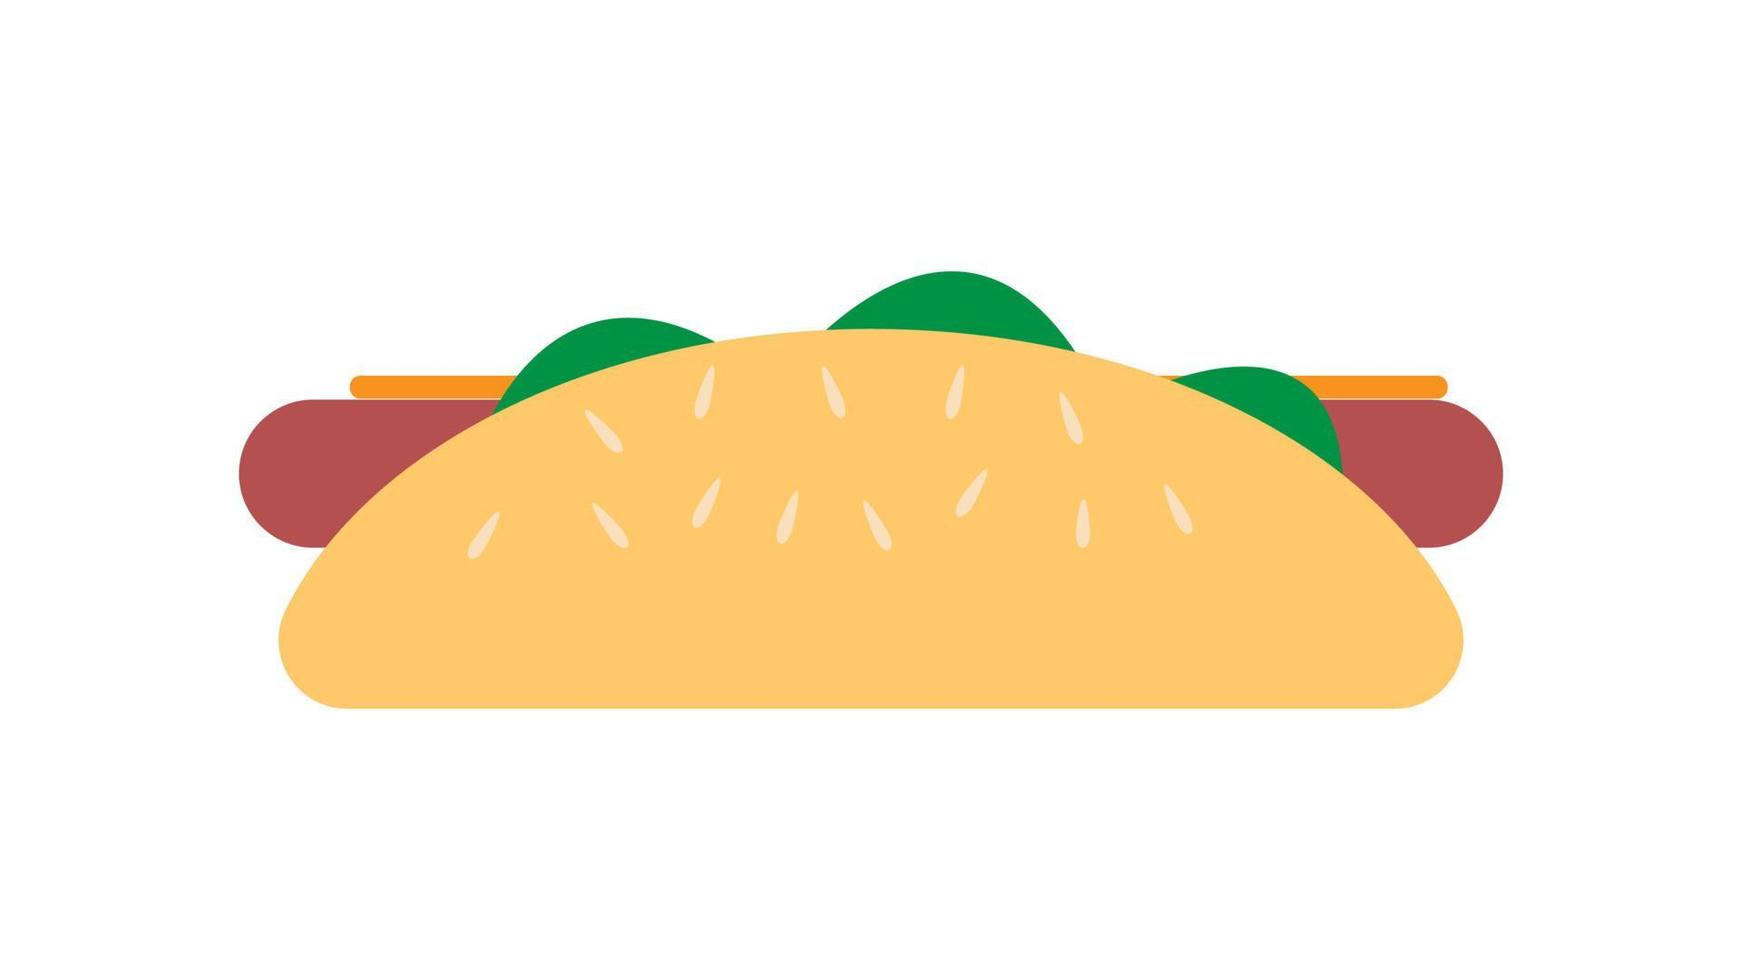 Sandwich mit Wurst auf weißem Hintergrund, Hotdog, Vektorillustration. Sandwich, herzhafter Snack, Fast Food. Brötchen mit Kräutern, Senf, Käse und Fleisch. Samen mit Sesam obendrauf vektor